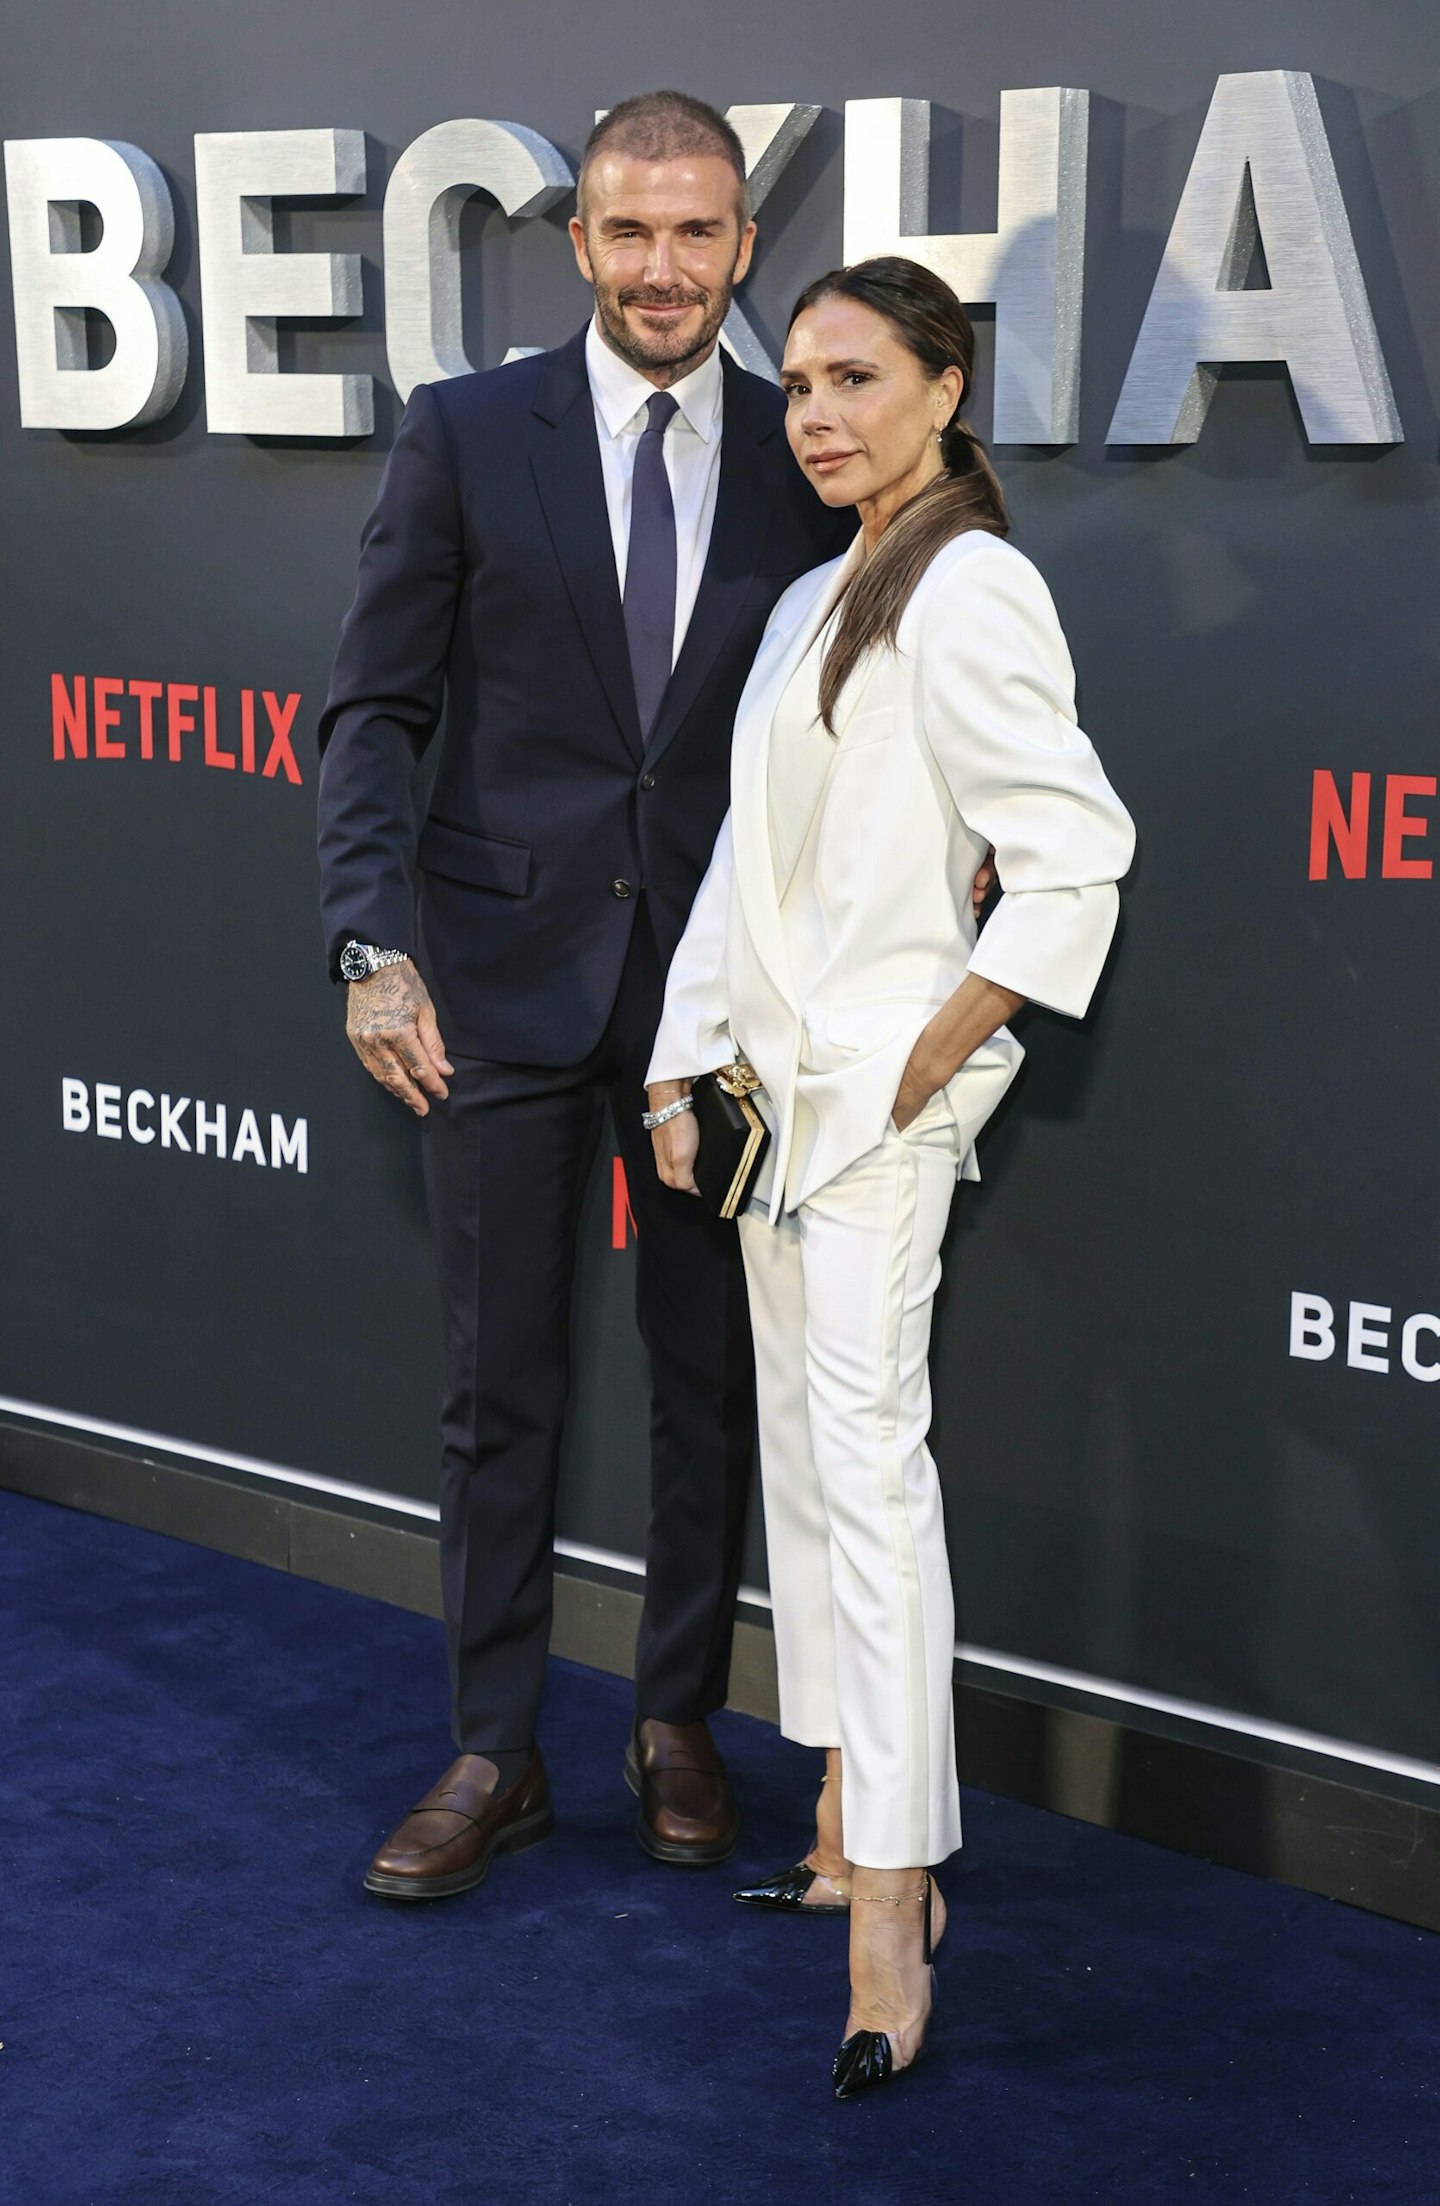 Victoria Beckham and David Beckham attend the Netflix 'Beckham' UK Premiere